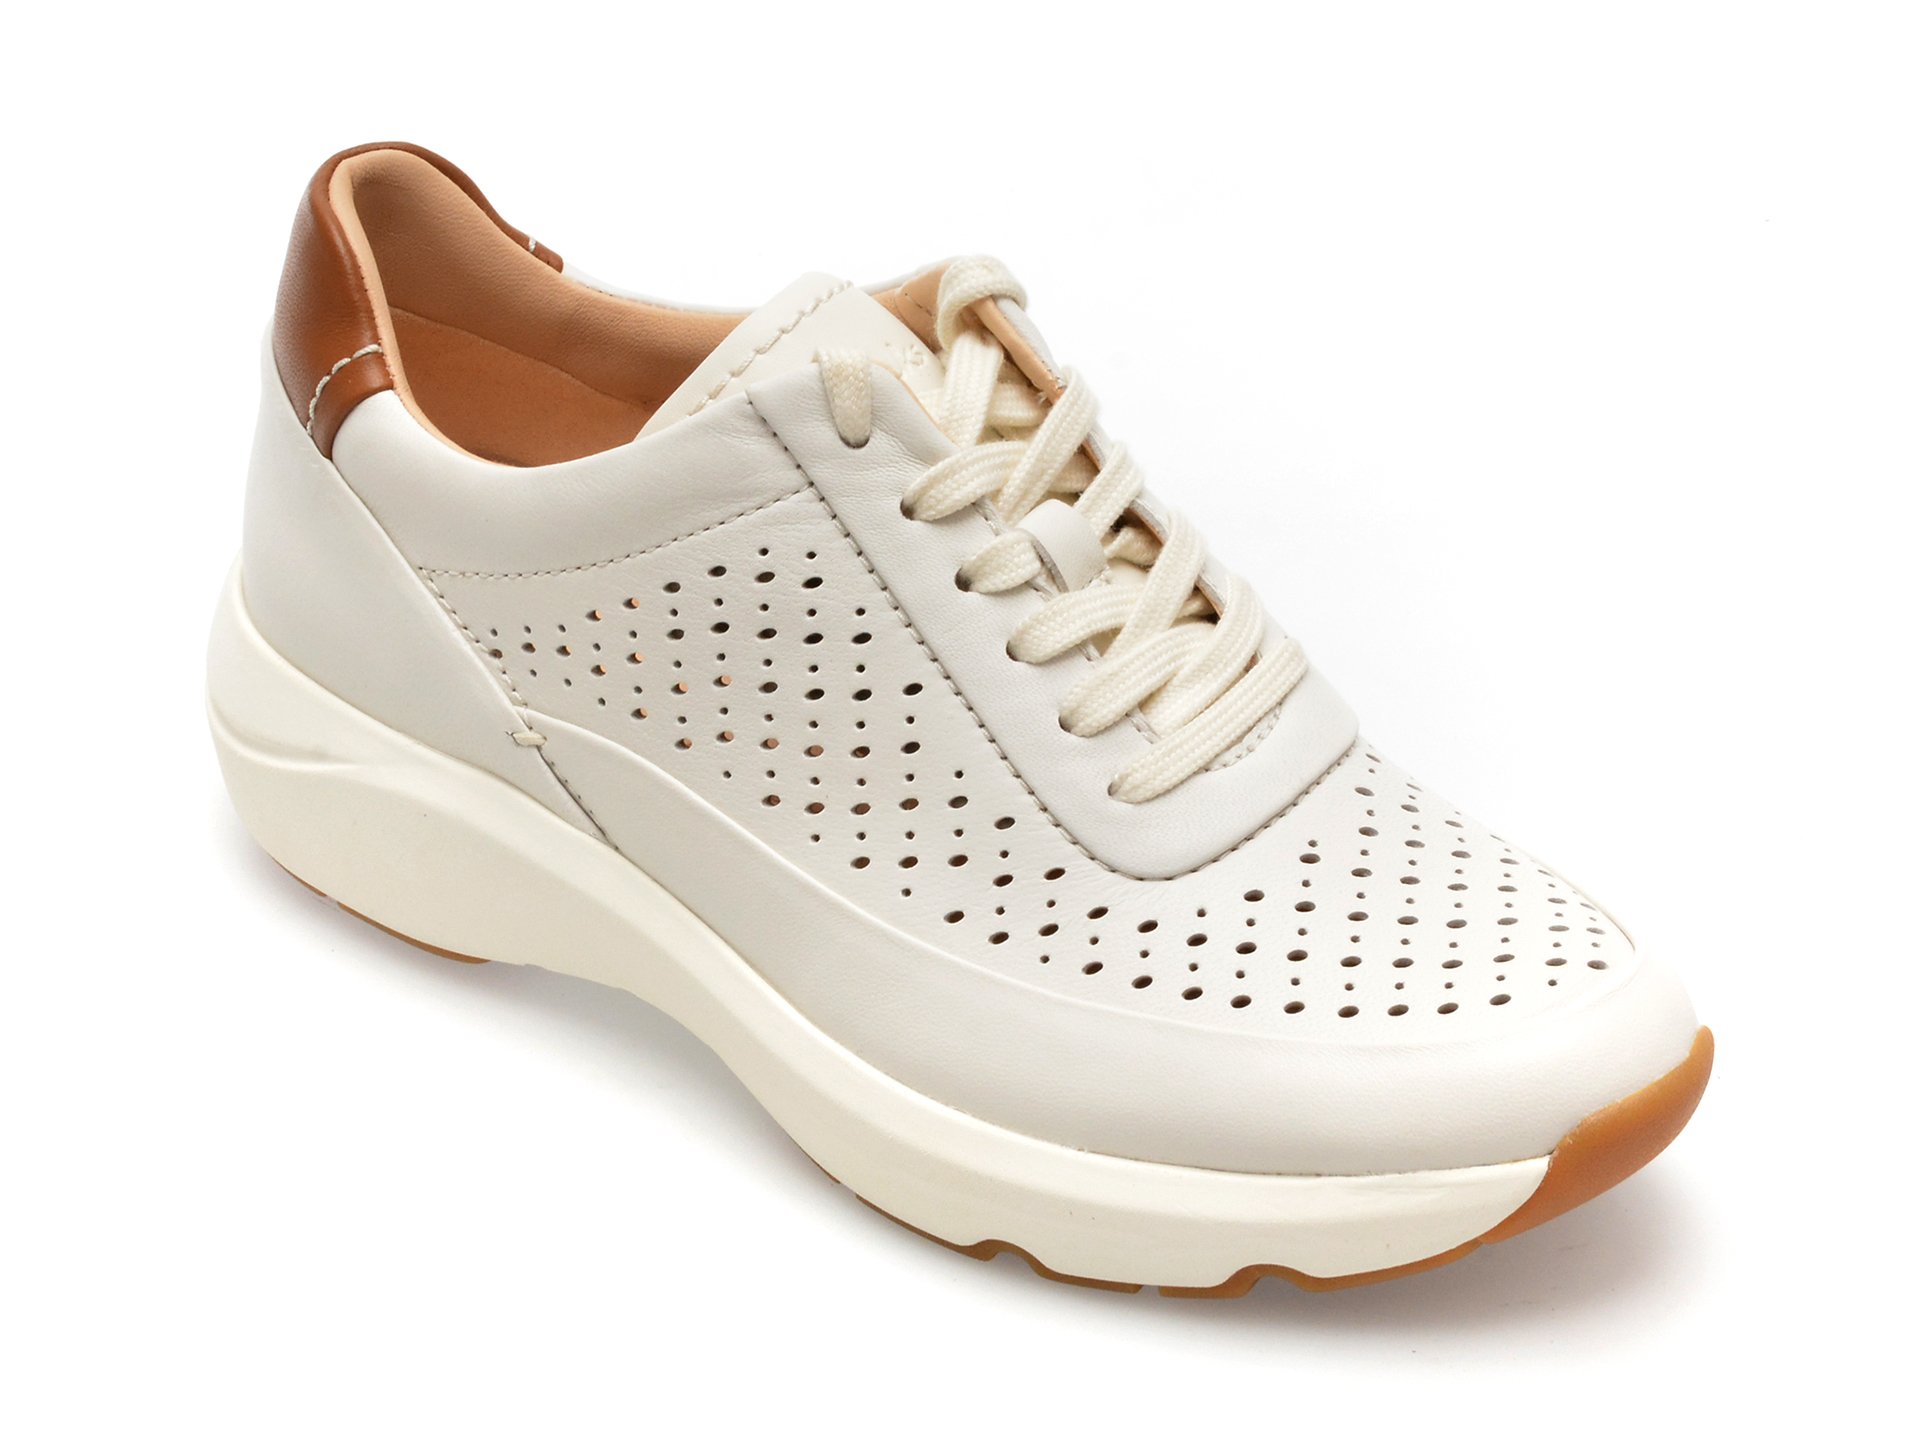 Pantofi sport CLARKS albi, TIVOLI GRACE, din piele naturala